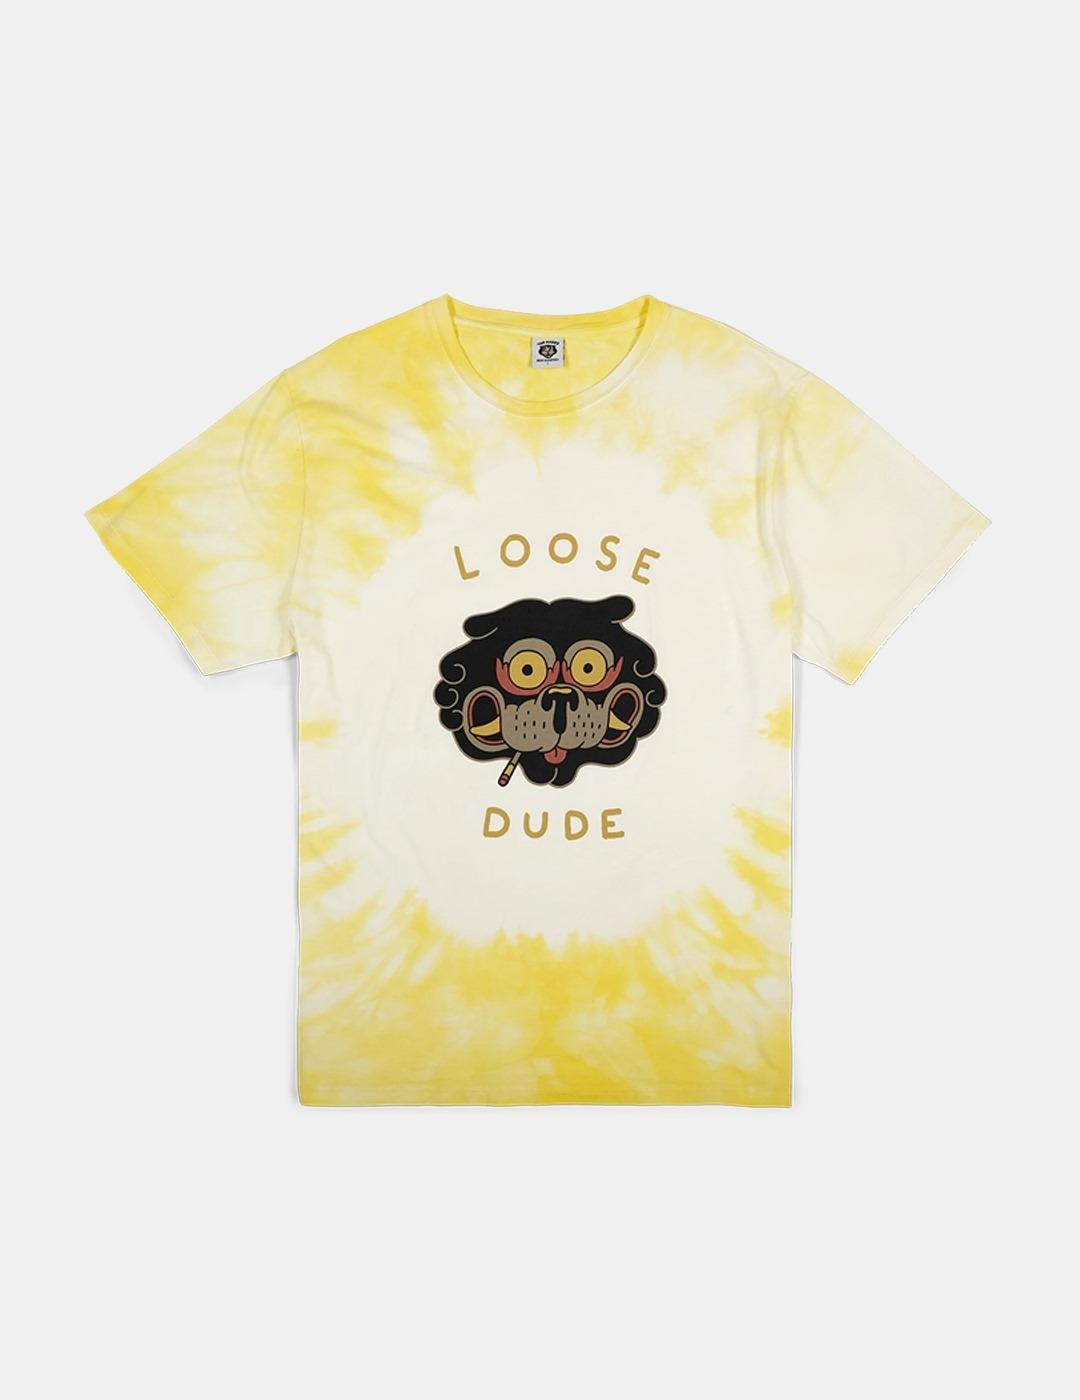 Camiseta The Dudes Loose Dude